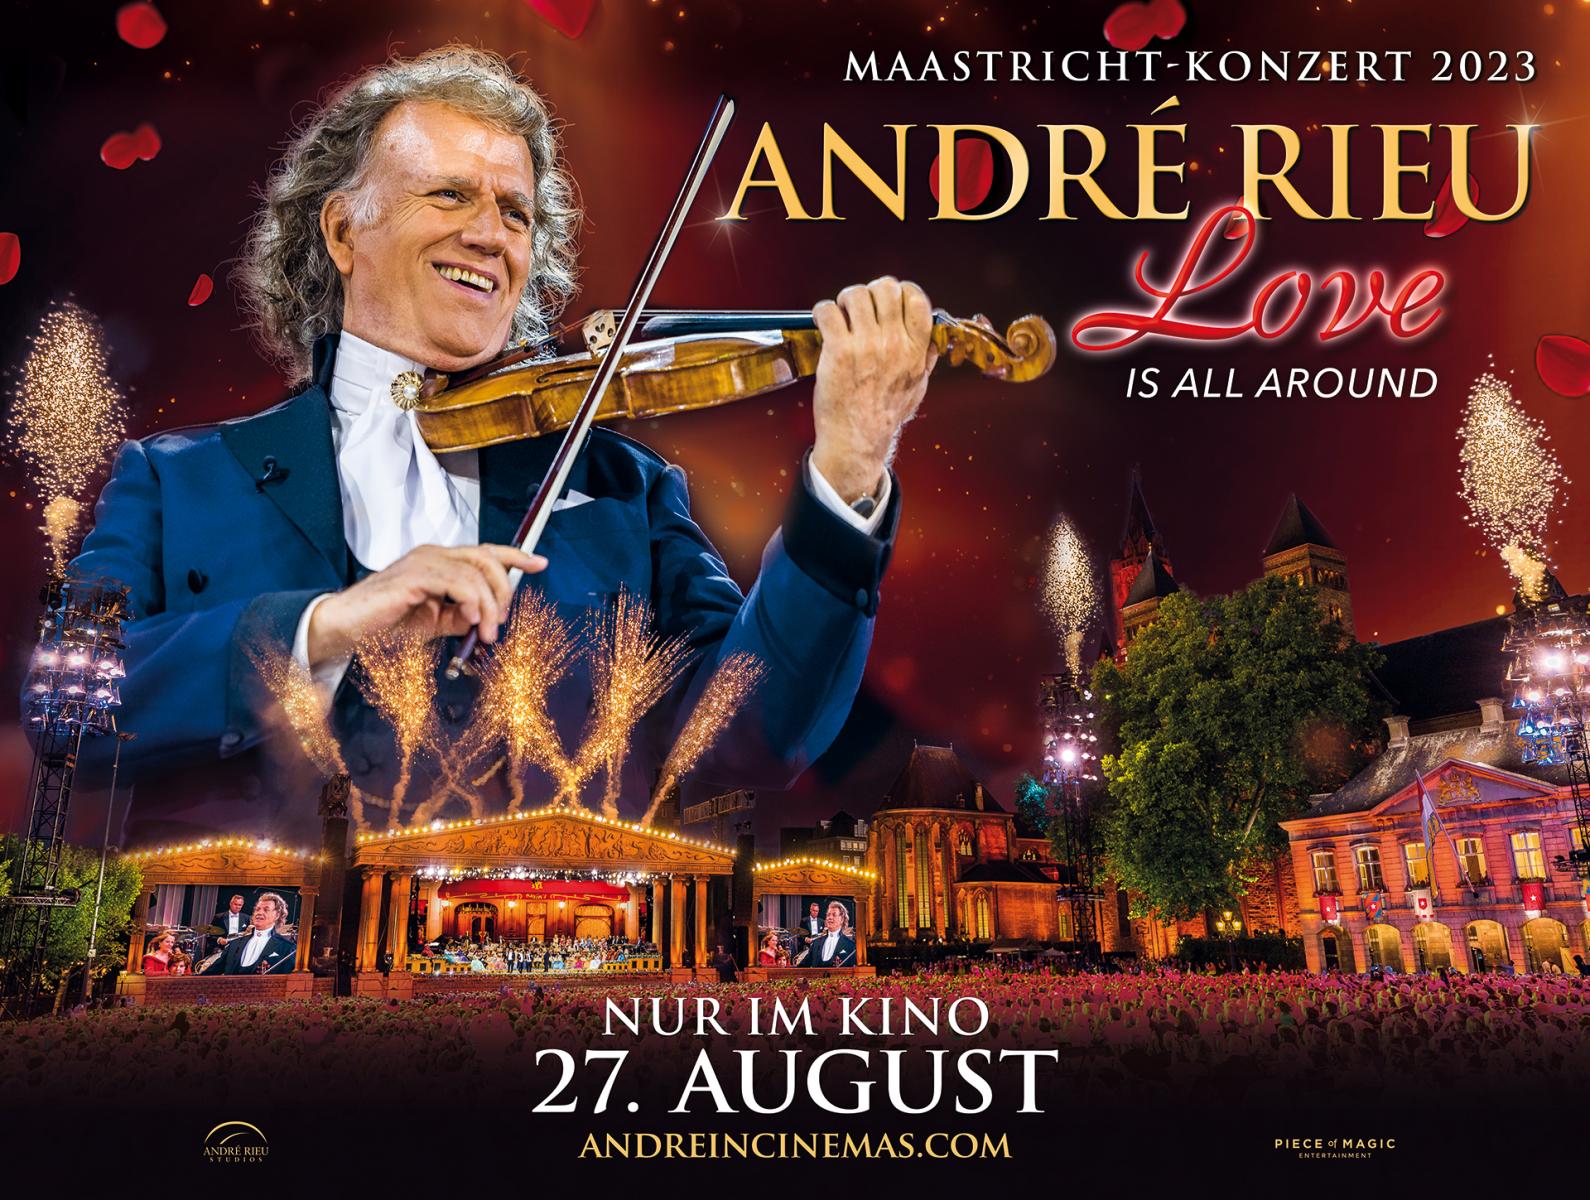 André Rieu Maastricht Konzert 2023: Love is All Around